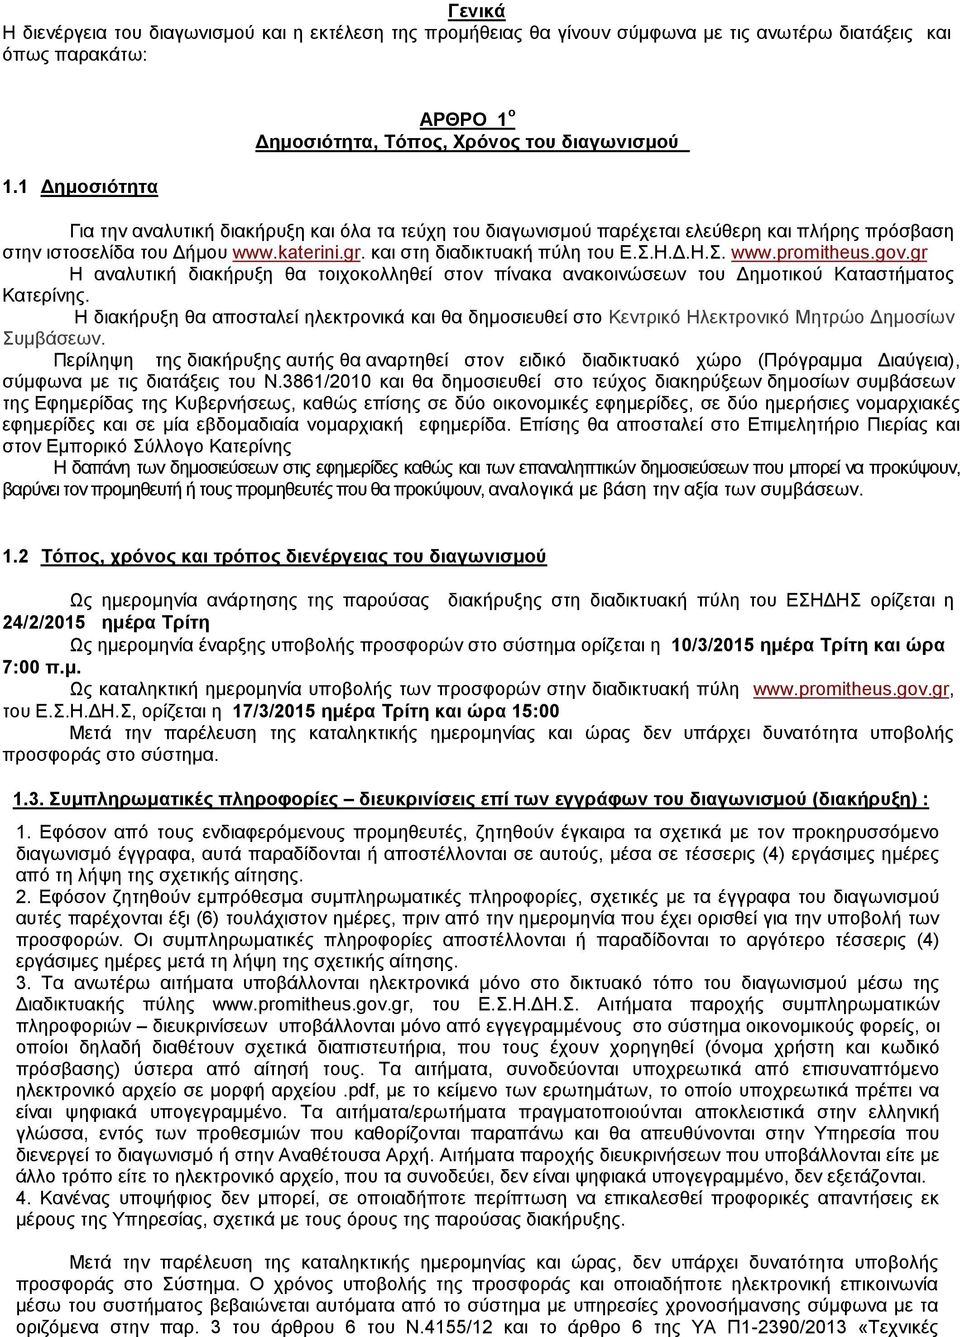 katerini.gr. και στη διαδικτυακή πύλη του Ε.Σ.Η.Δ.Η.Σ. www.promitheus.gov.gr Η αναλυτική διακήρυξη θα τοιχοκολληθεί στον πίνακα ανακοινώσεων του Δημοτικού Καταστήματος Κατερίνης.